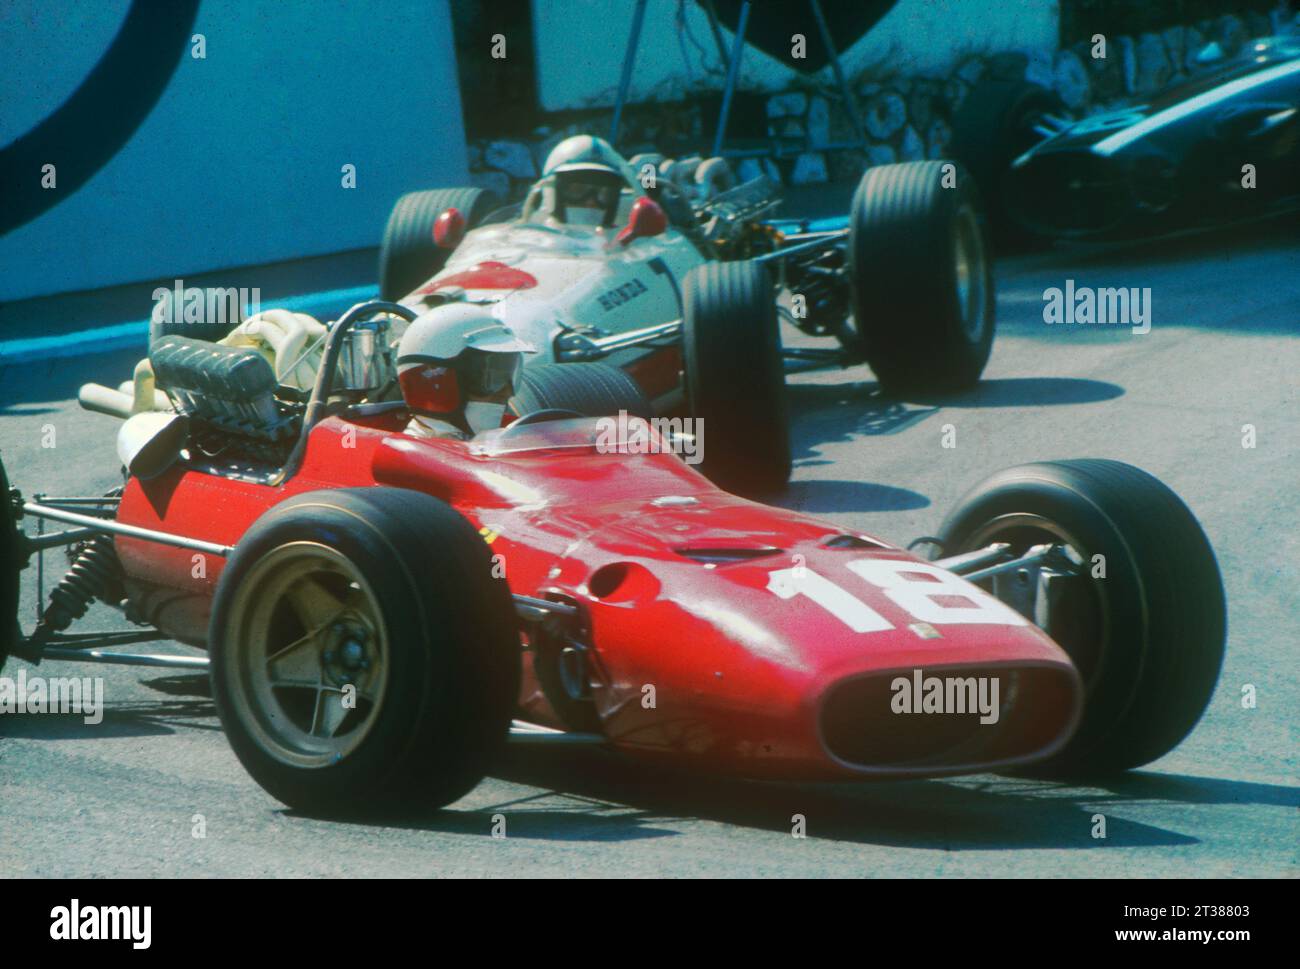 Monaco Granp Prix 1967. Lorenzo Bandini (Ferrari) seguito da John Surtees (Honda) alla Virage de la Gare (tornante della stazione). Bandini subirebbe un tragico incidente verso la fine della gara. Foto Stock